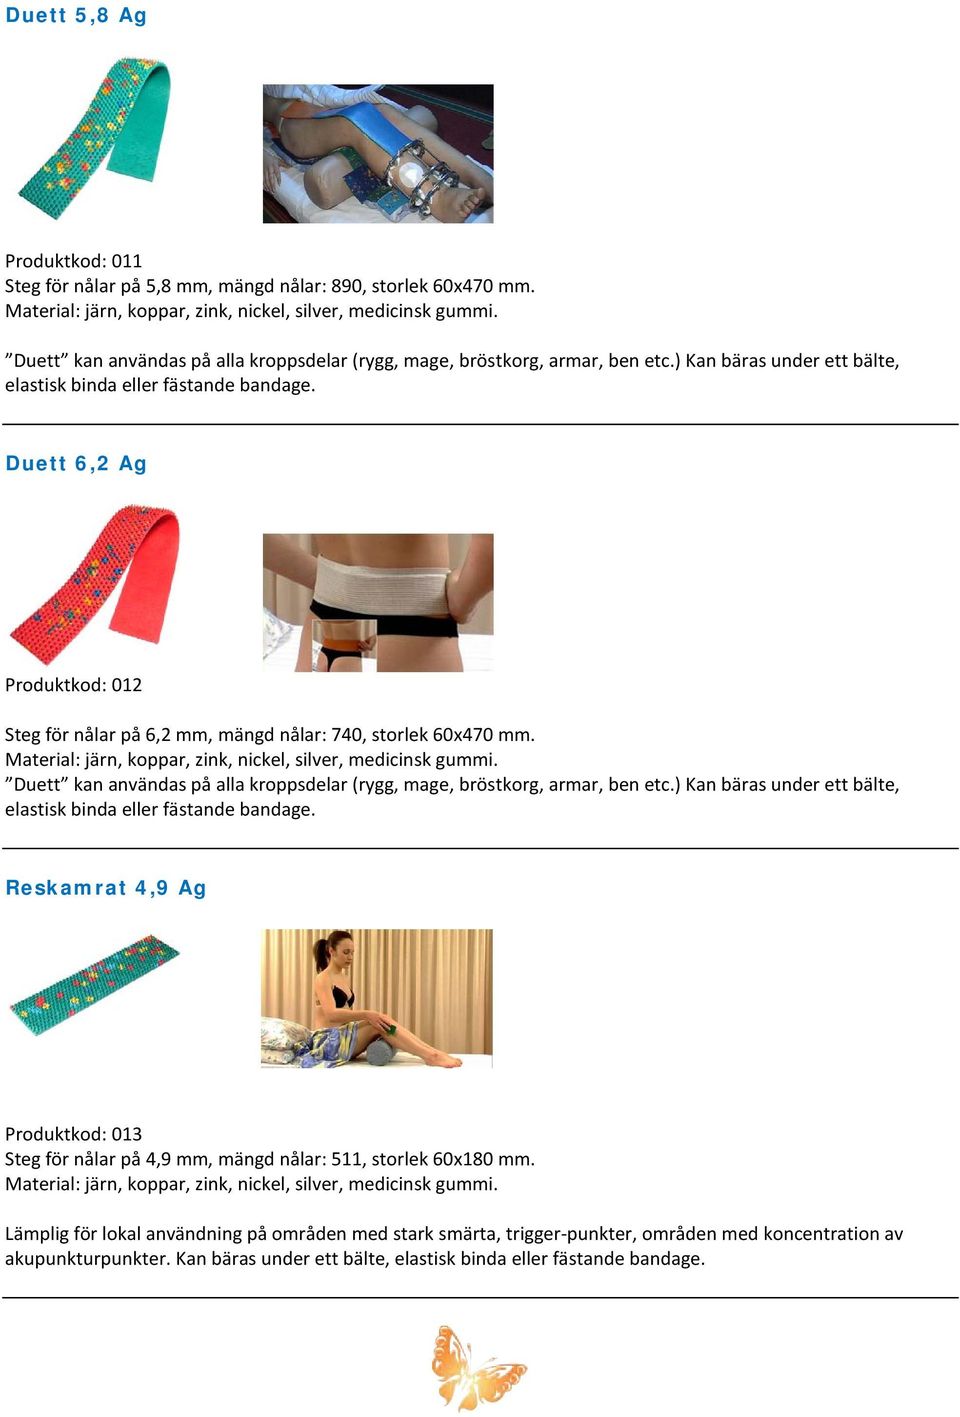 Duett kan användas på alla kroppsdelar (rygg, mage, bröstkorg, armar, ben etc.) Kan bäras under ett bälte, elastisk binda eller fästande bandage.